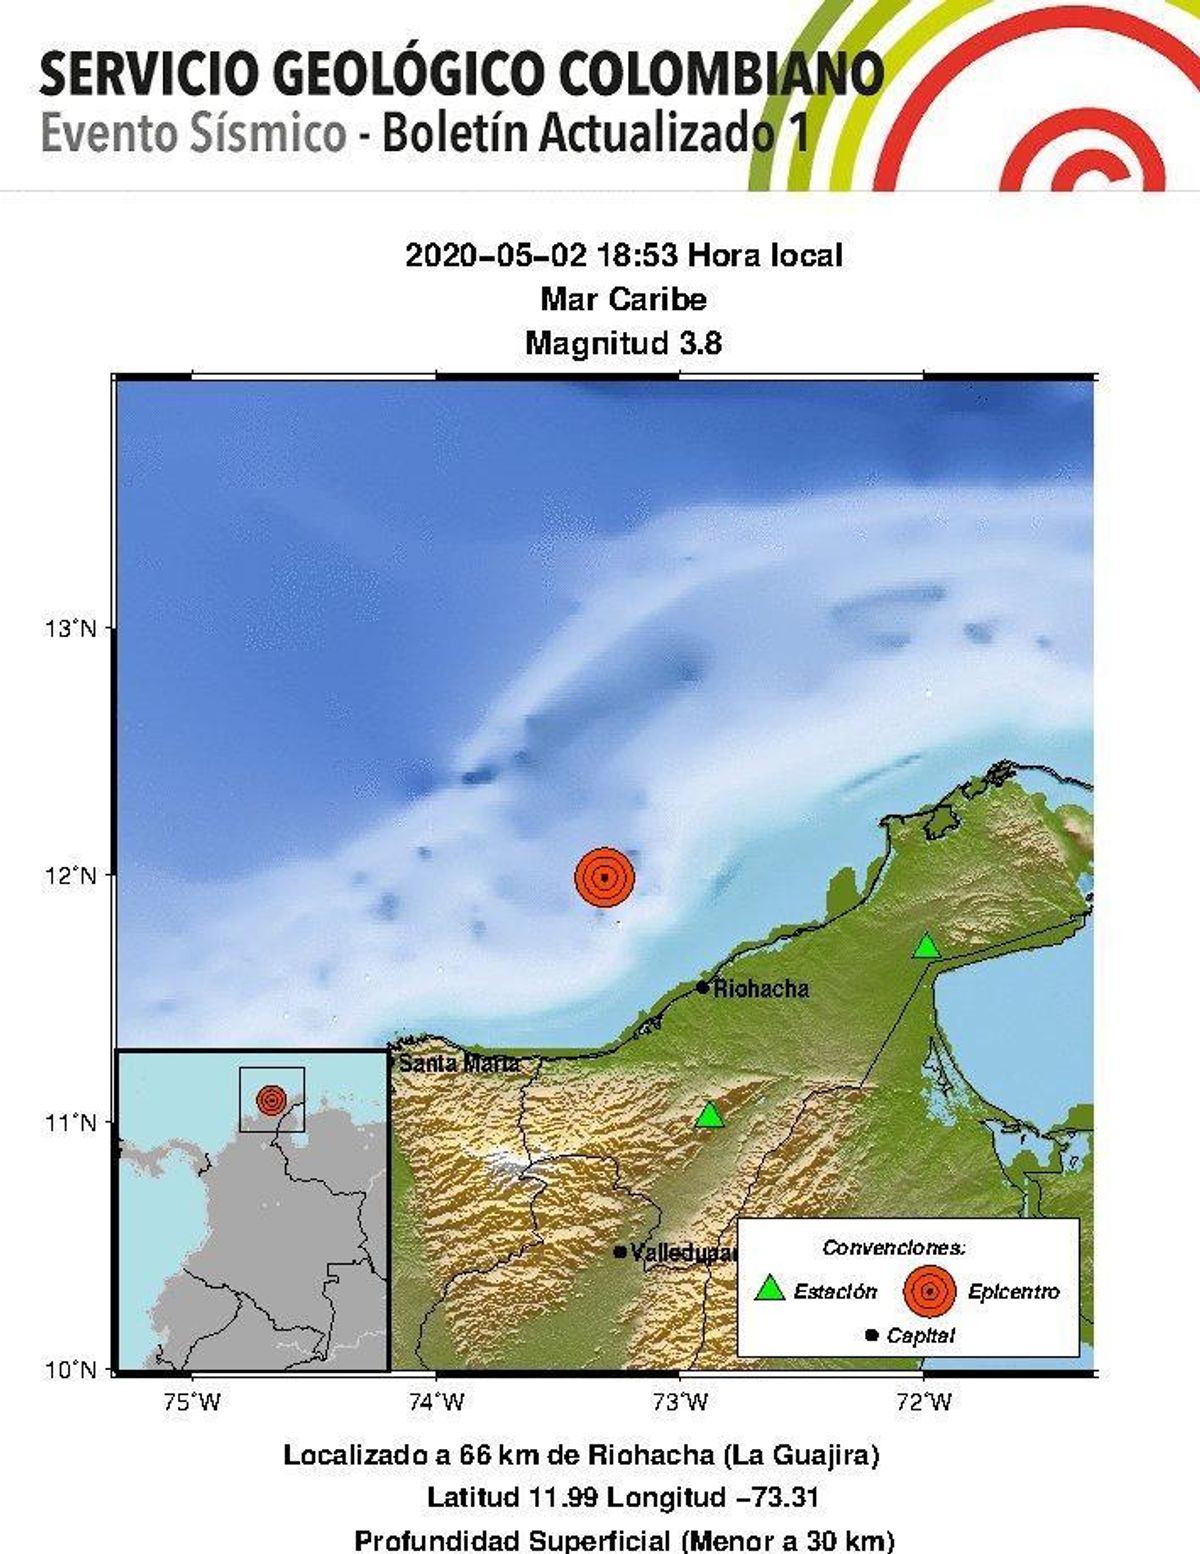 Se presentó un sismo de magnitud 3.8 en el Mar Caribe